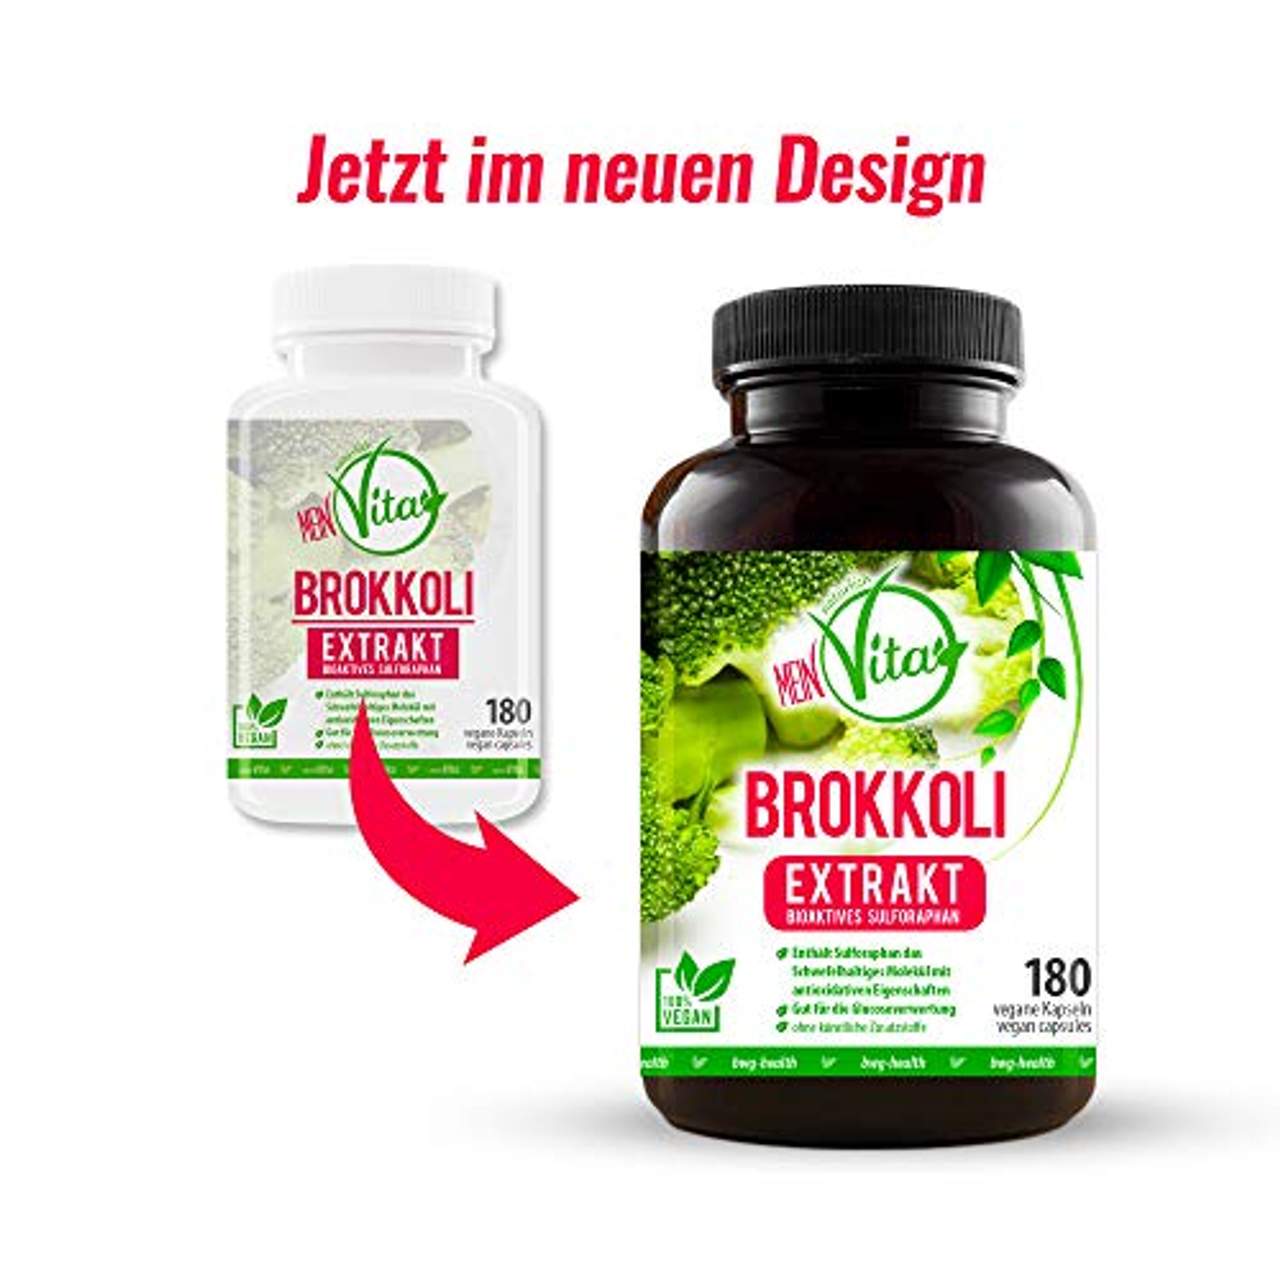 MeinVita Brokkoli Extrakt 180 hochdosiert- 100% Vegan Kapseln